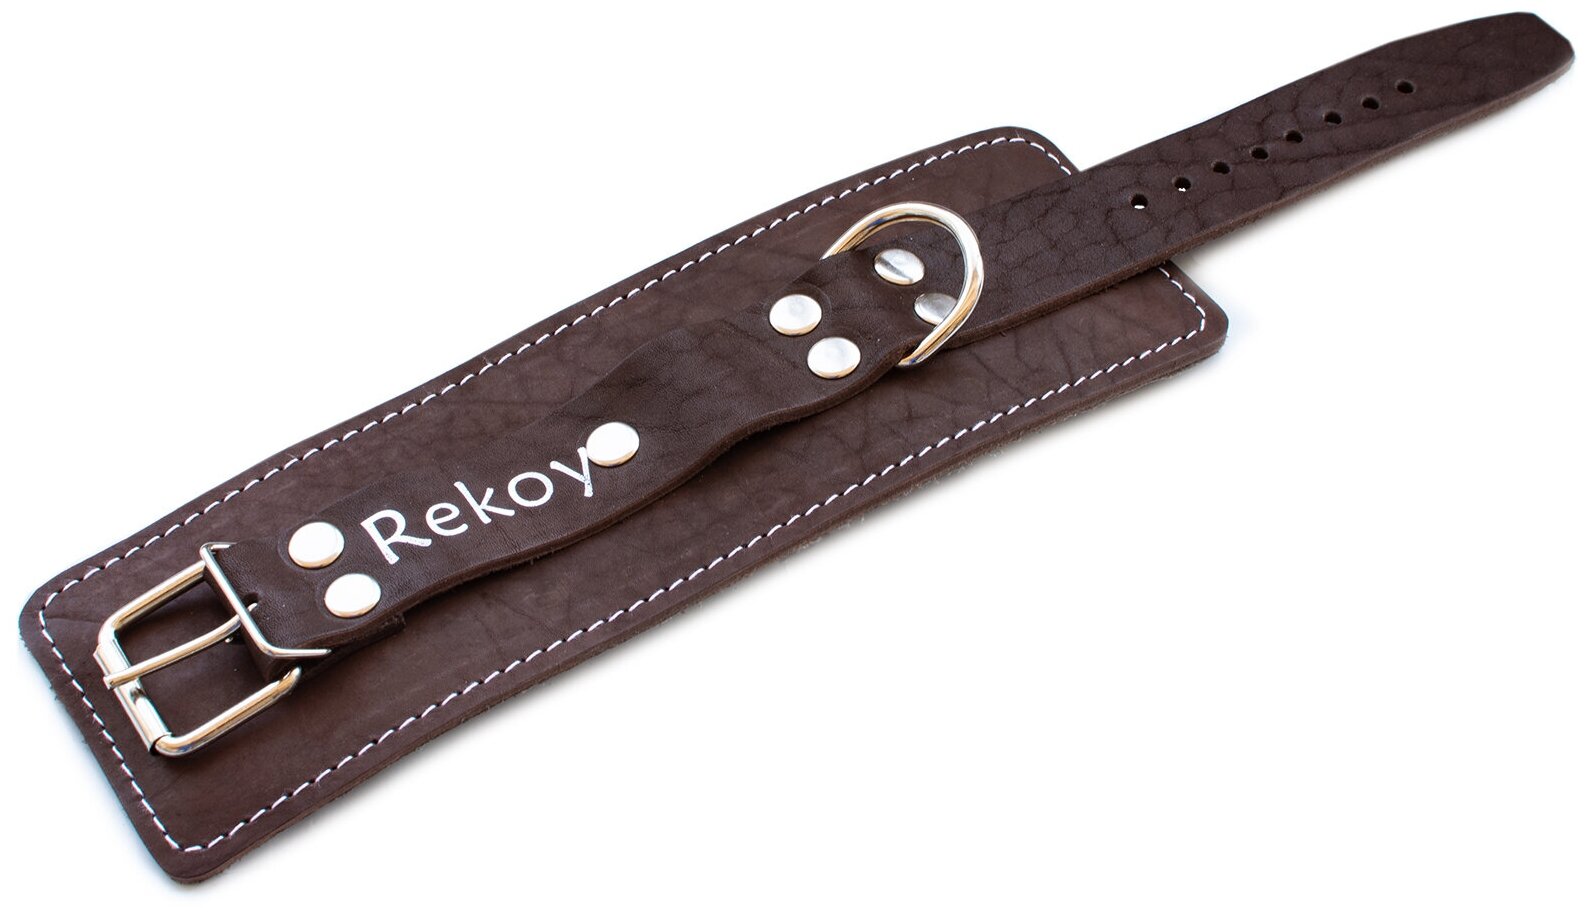     ReKoy FG010       , 1 .